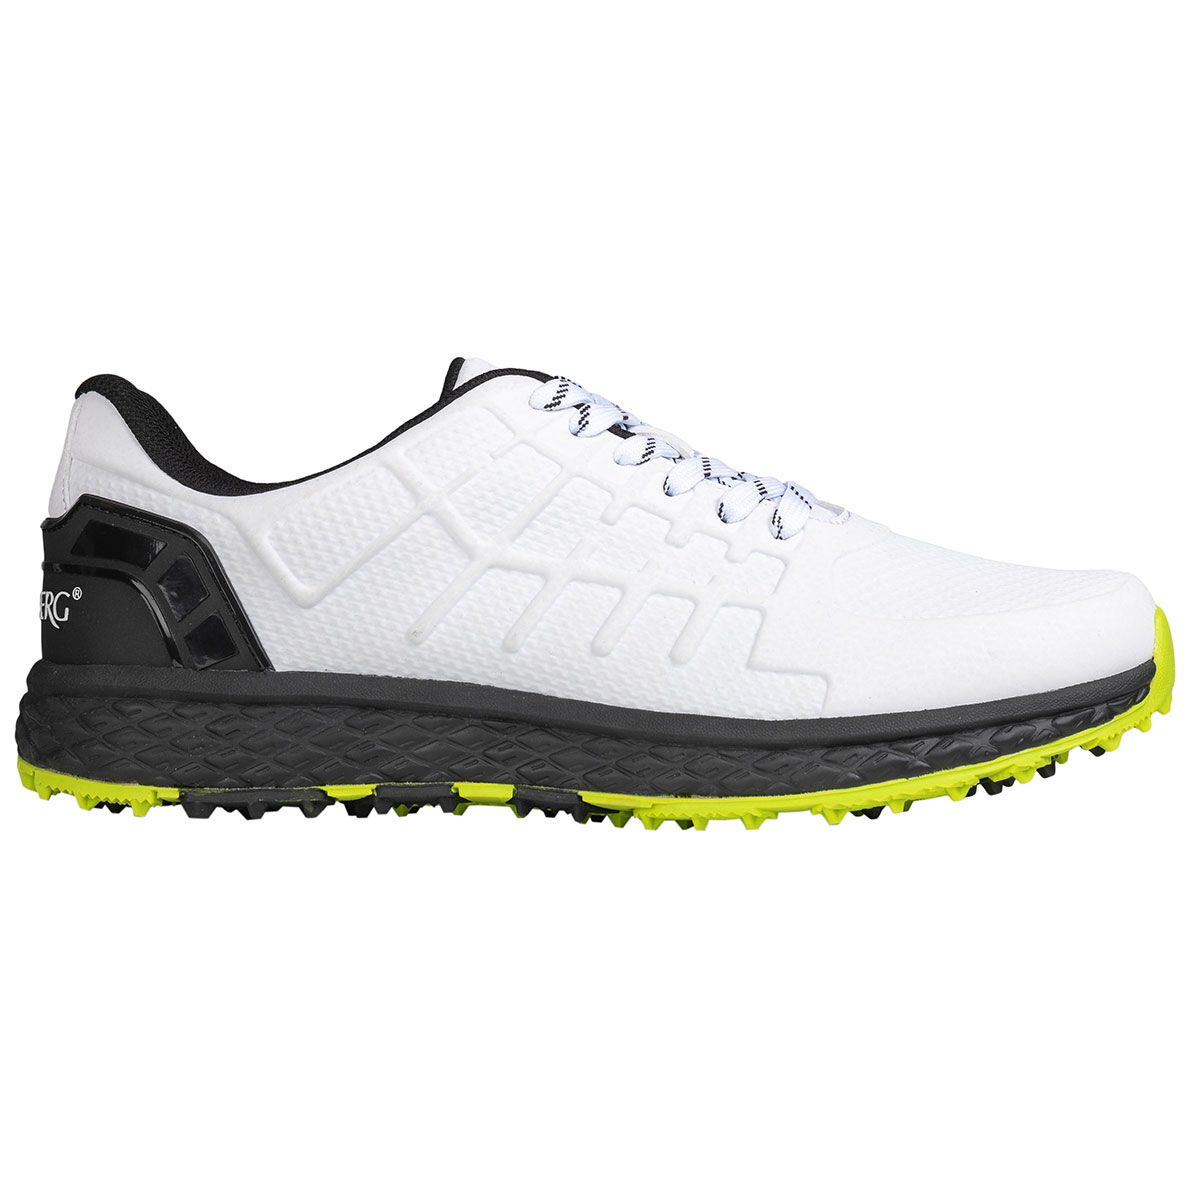 Chaussures Stromberg Razor, homme, 7, White/black/lime | Online Golf